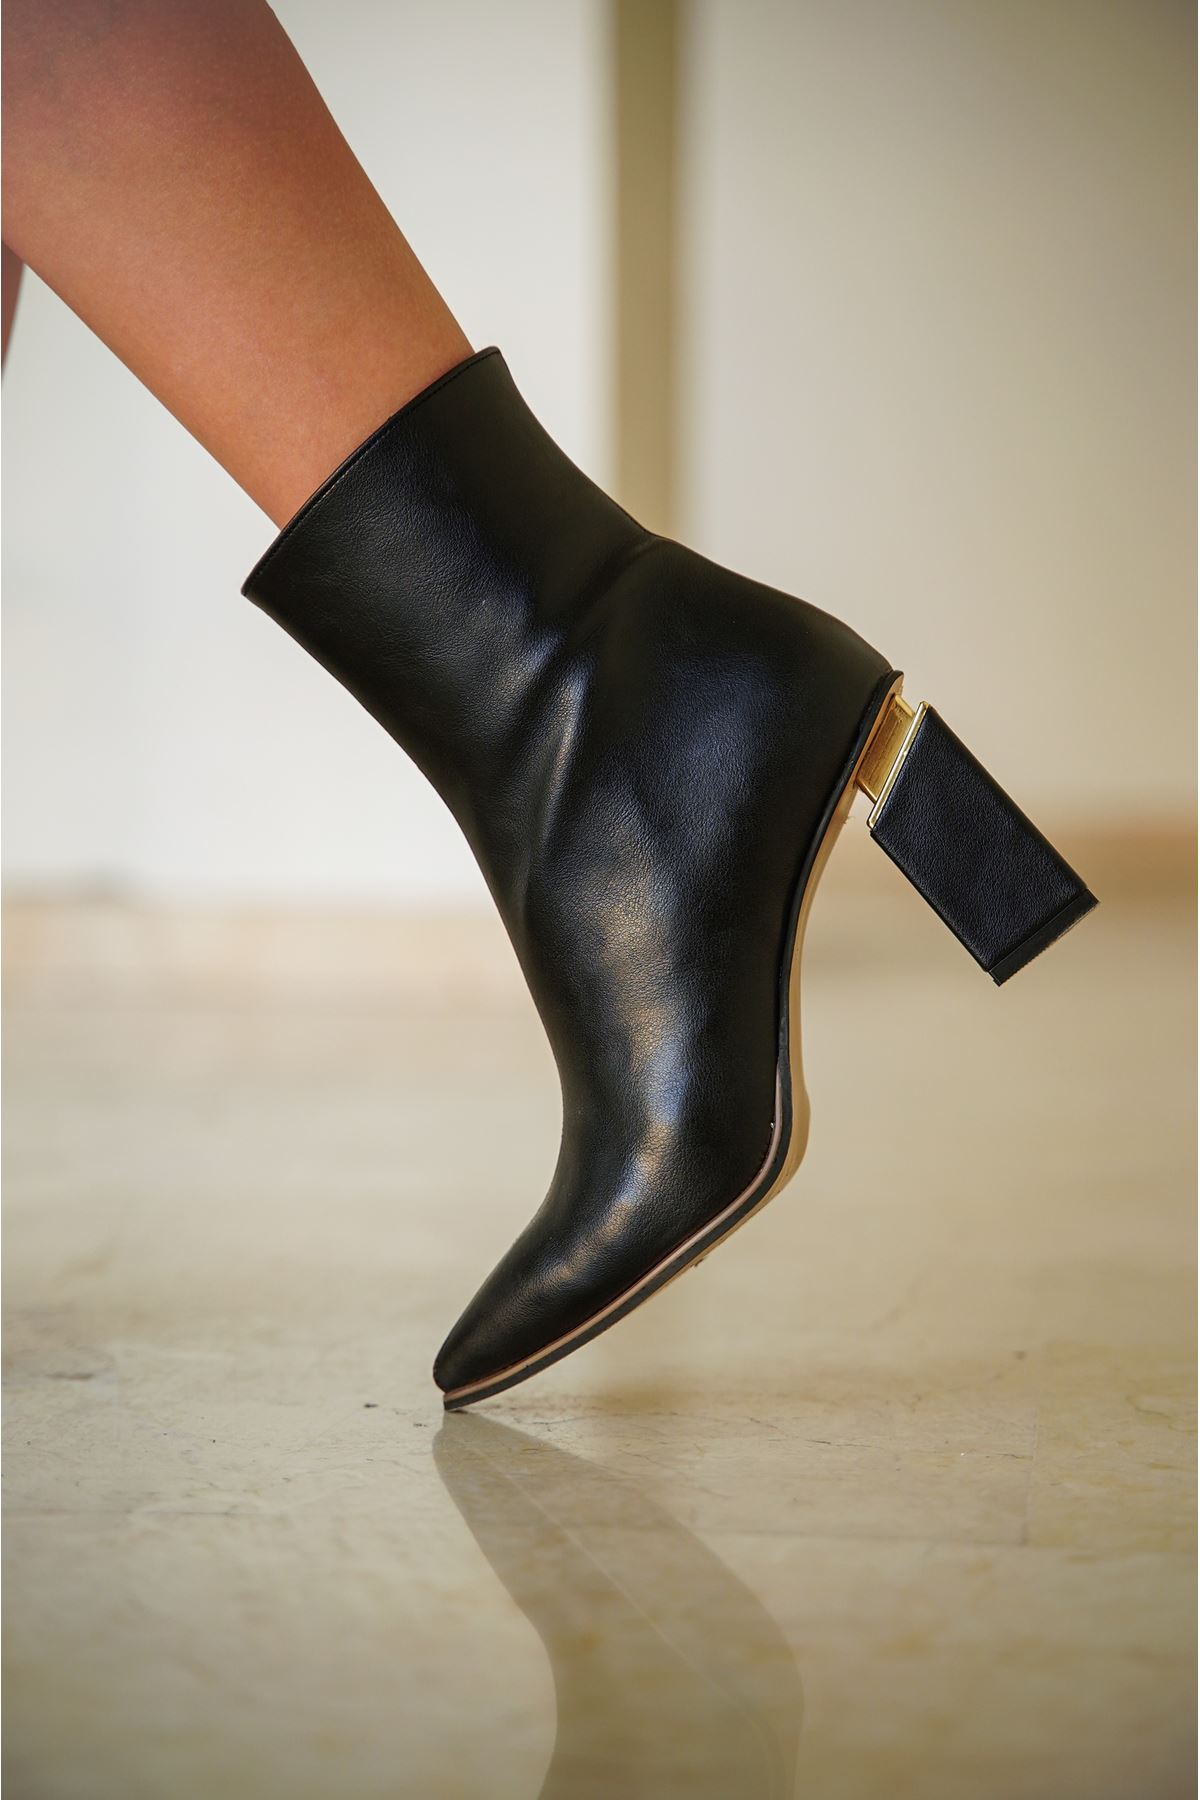 Alara Zarif Altın Renk Aksesuarlı Klasik Fermuarlı Abiye Kadın Bot Ayakkabı-Siyah